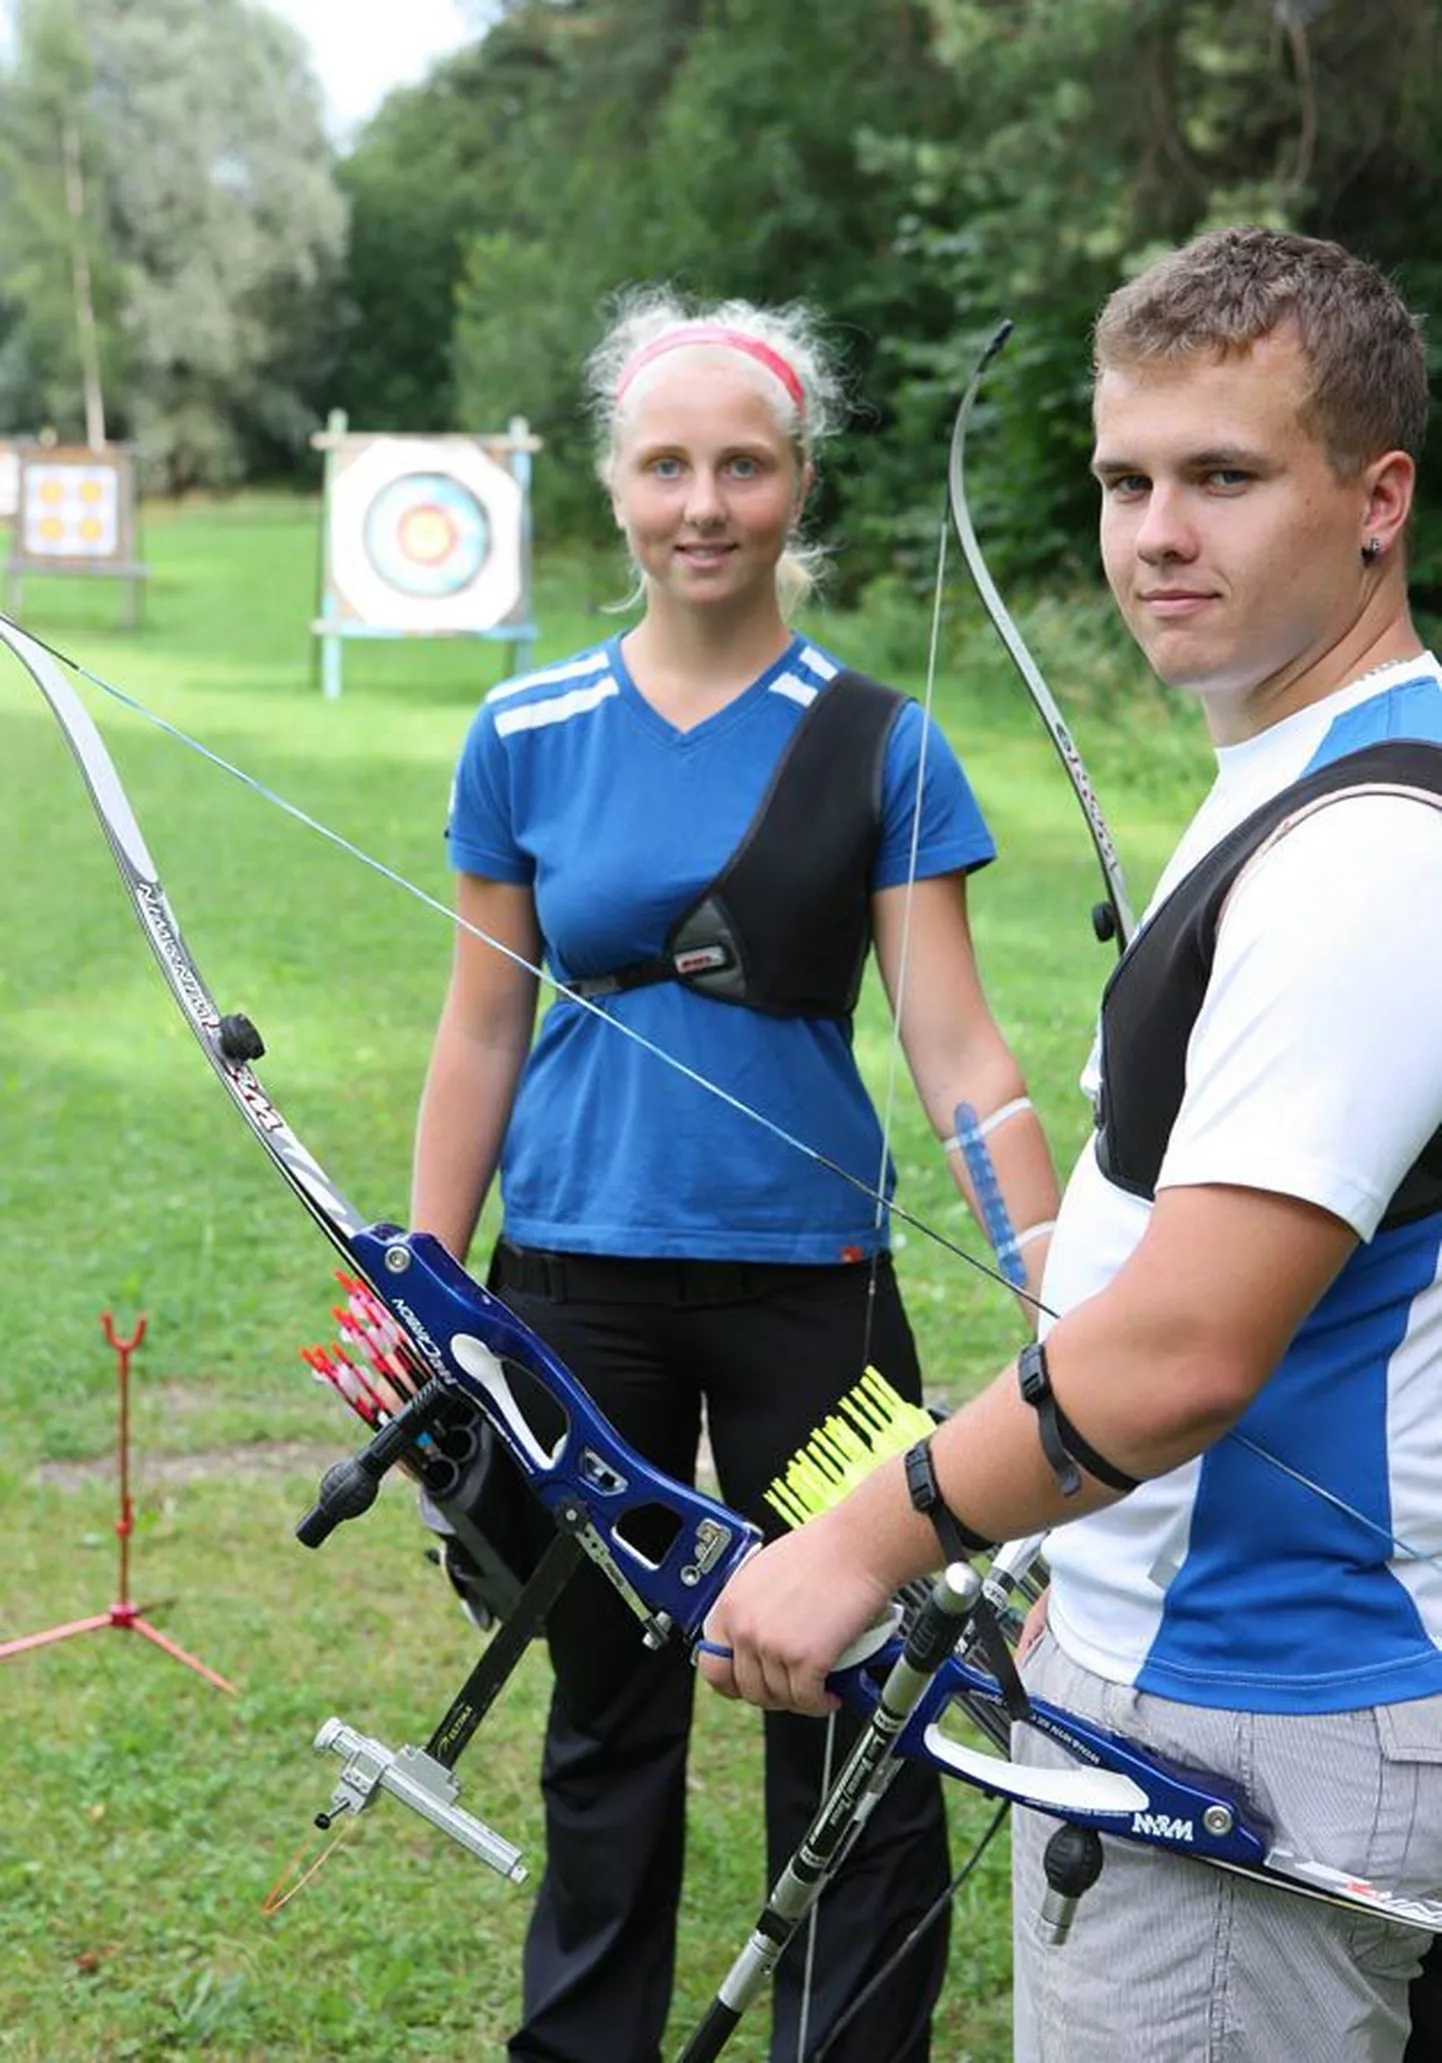 Laura Nurmsalu ja Taavo Allik valmistuvad noorte maailmameistrivõistlusteks. Pilt on tehtud eelmisel sügisel Viljandi vibustaadionil.